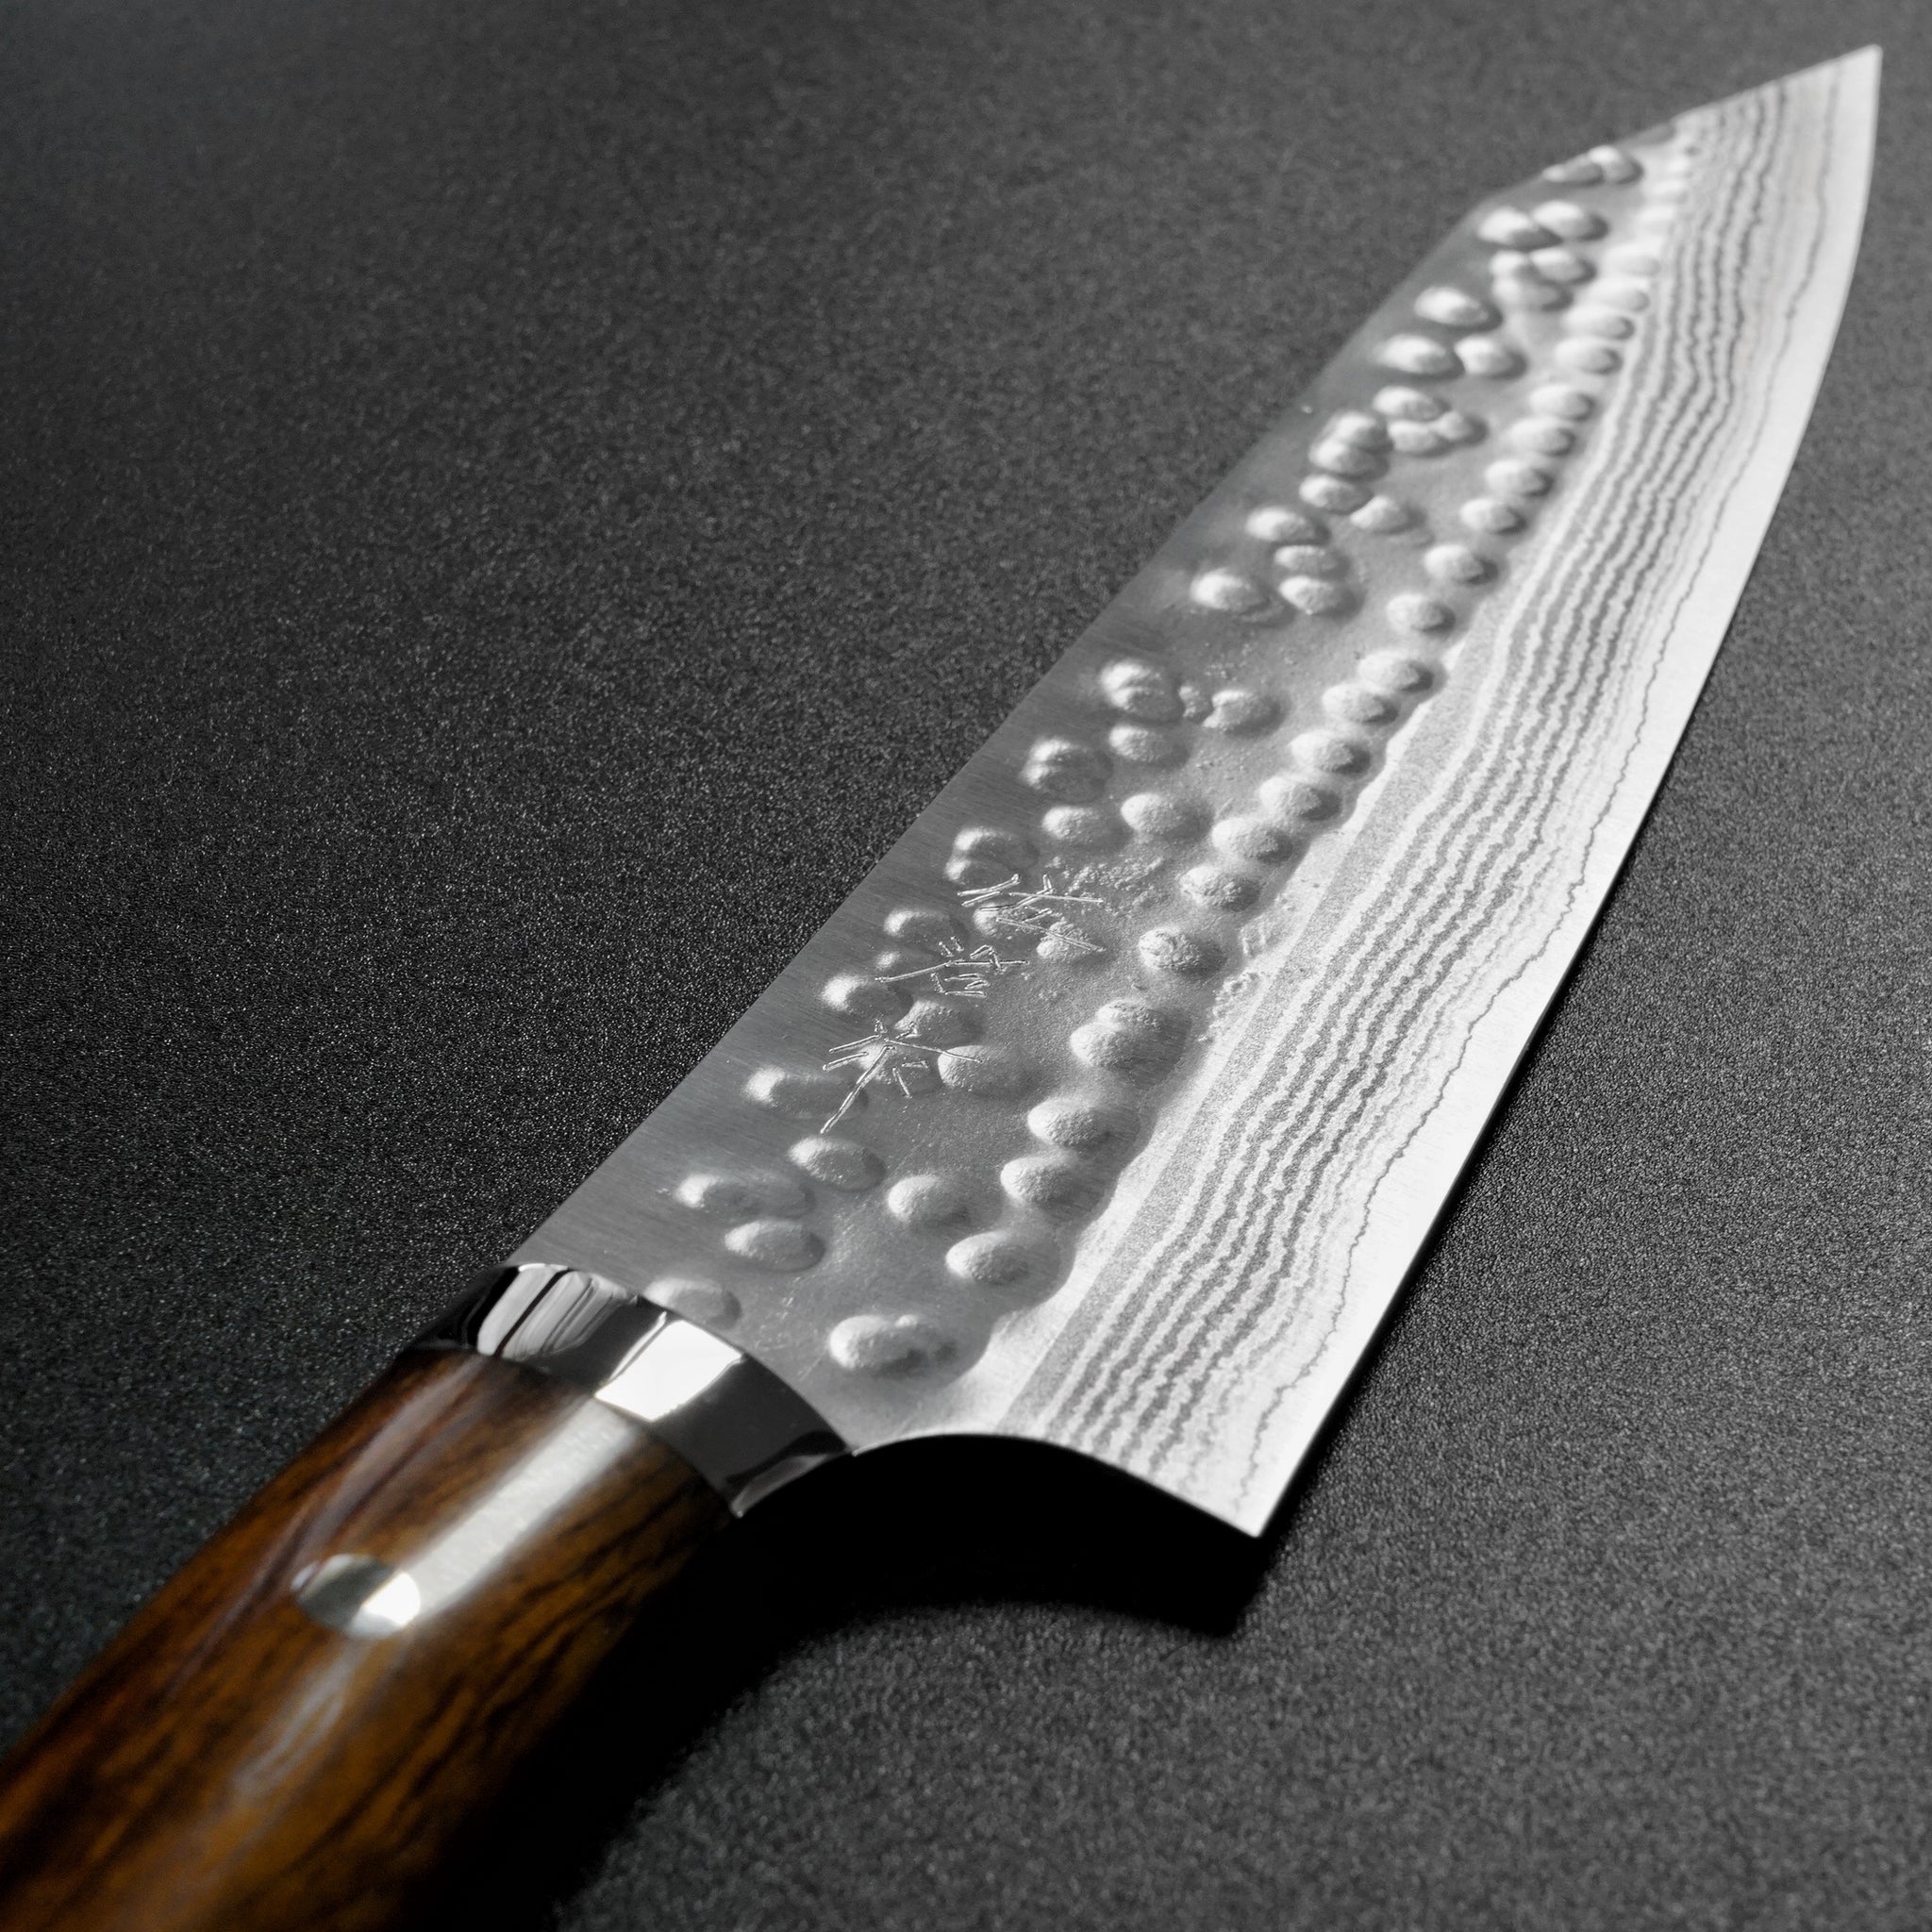 Samurai Slice - Damascus Steel Kitchen Knives – Wondrwood